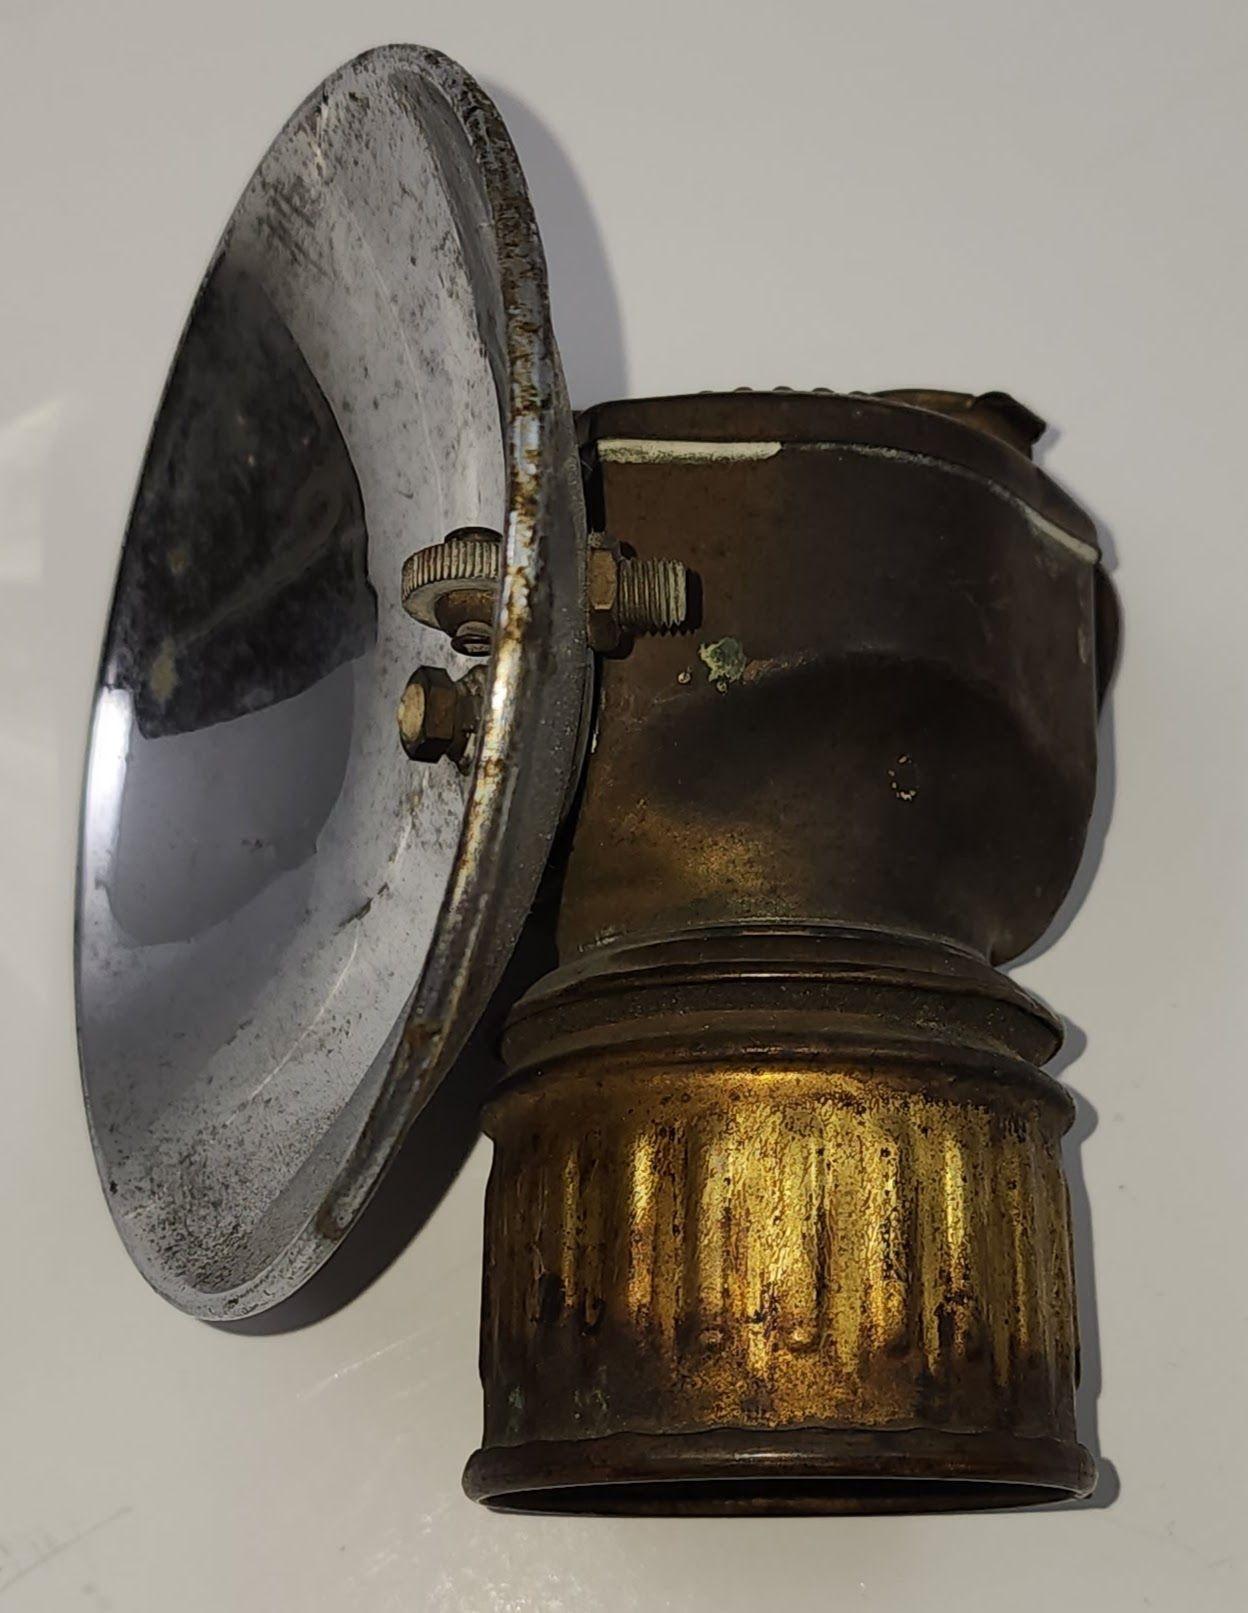 Carbide Kohle Miners Lampe mit Kohle Öldose und Zinn funnel von Justrite Areamlined, geschmückt (Handgefertigt) im Angebot